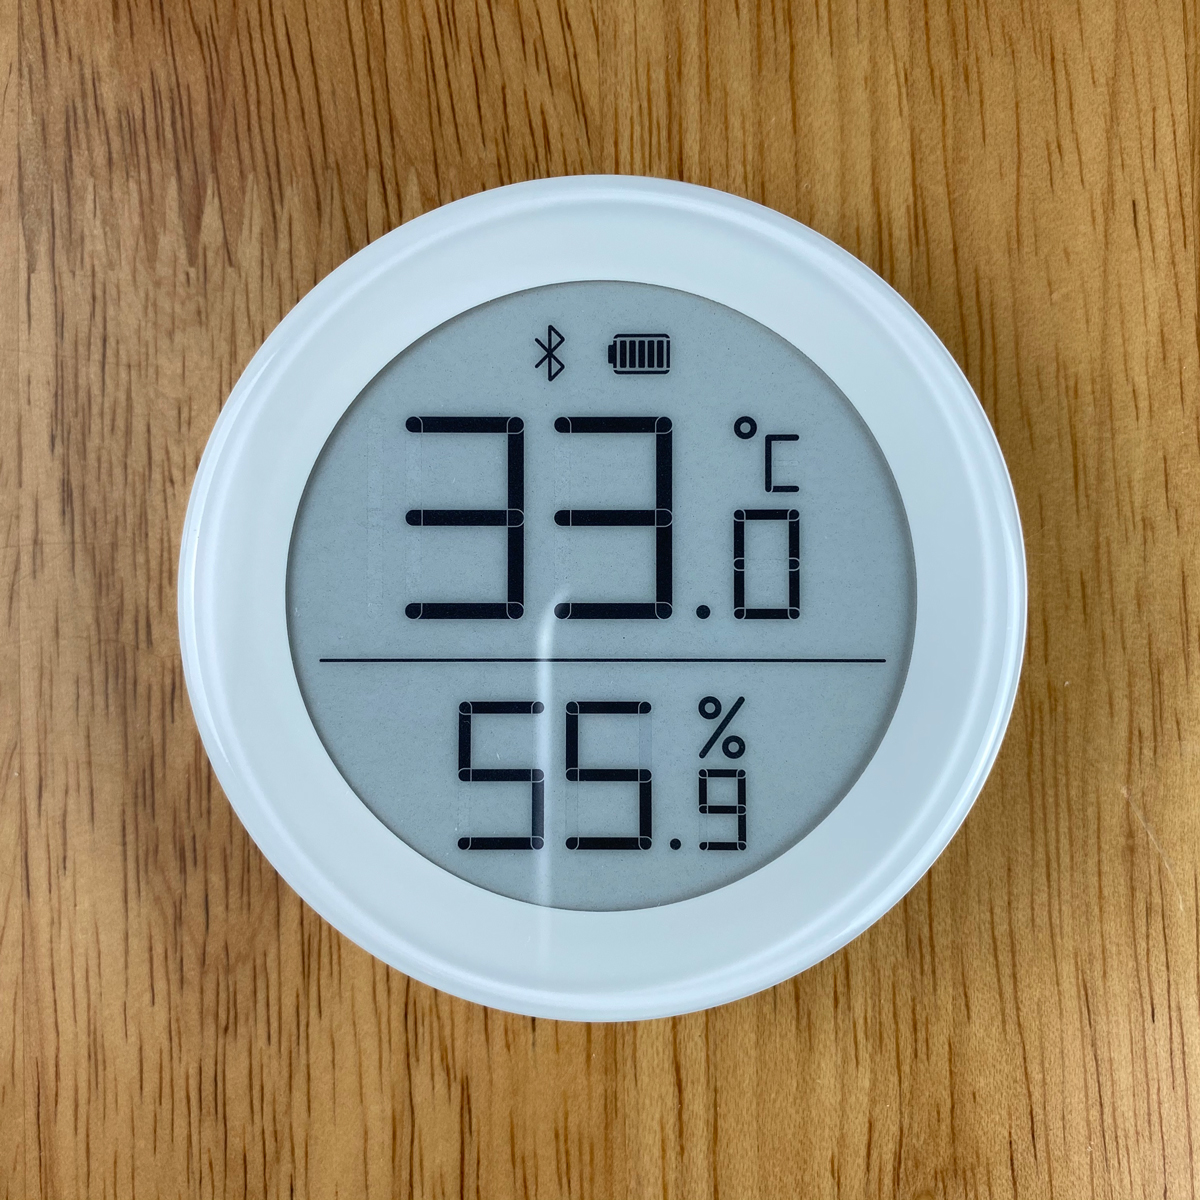 Xiaomi QingPing Bluetooth Alarm Clock Temperature Humidity Sensor